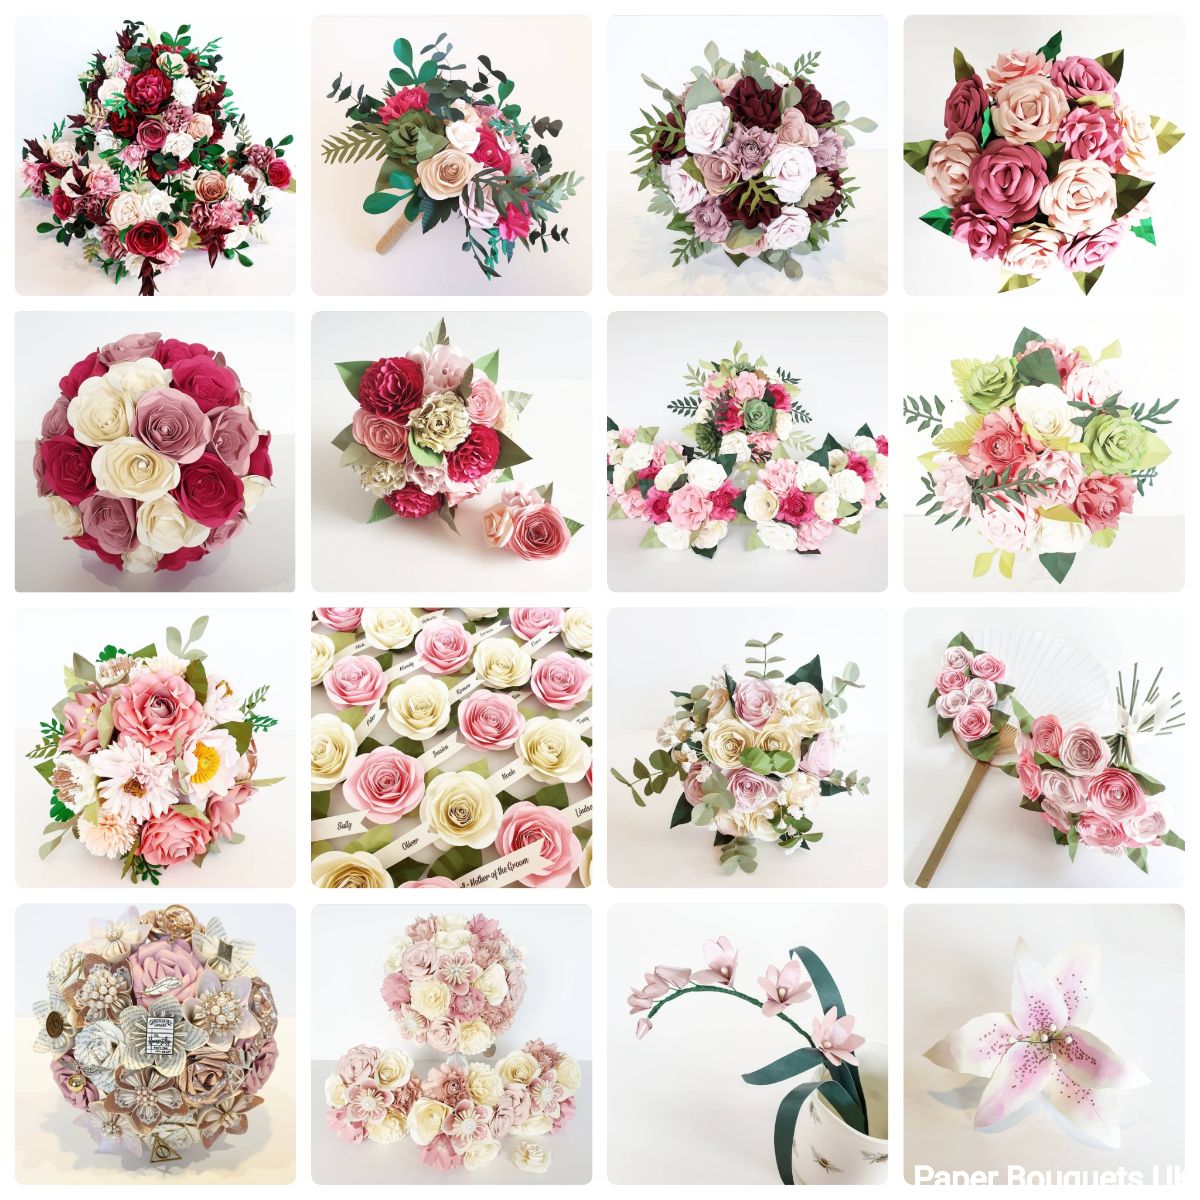 Paper Bouquets UK-Image-105